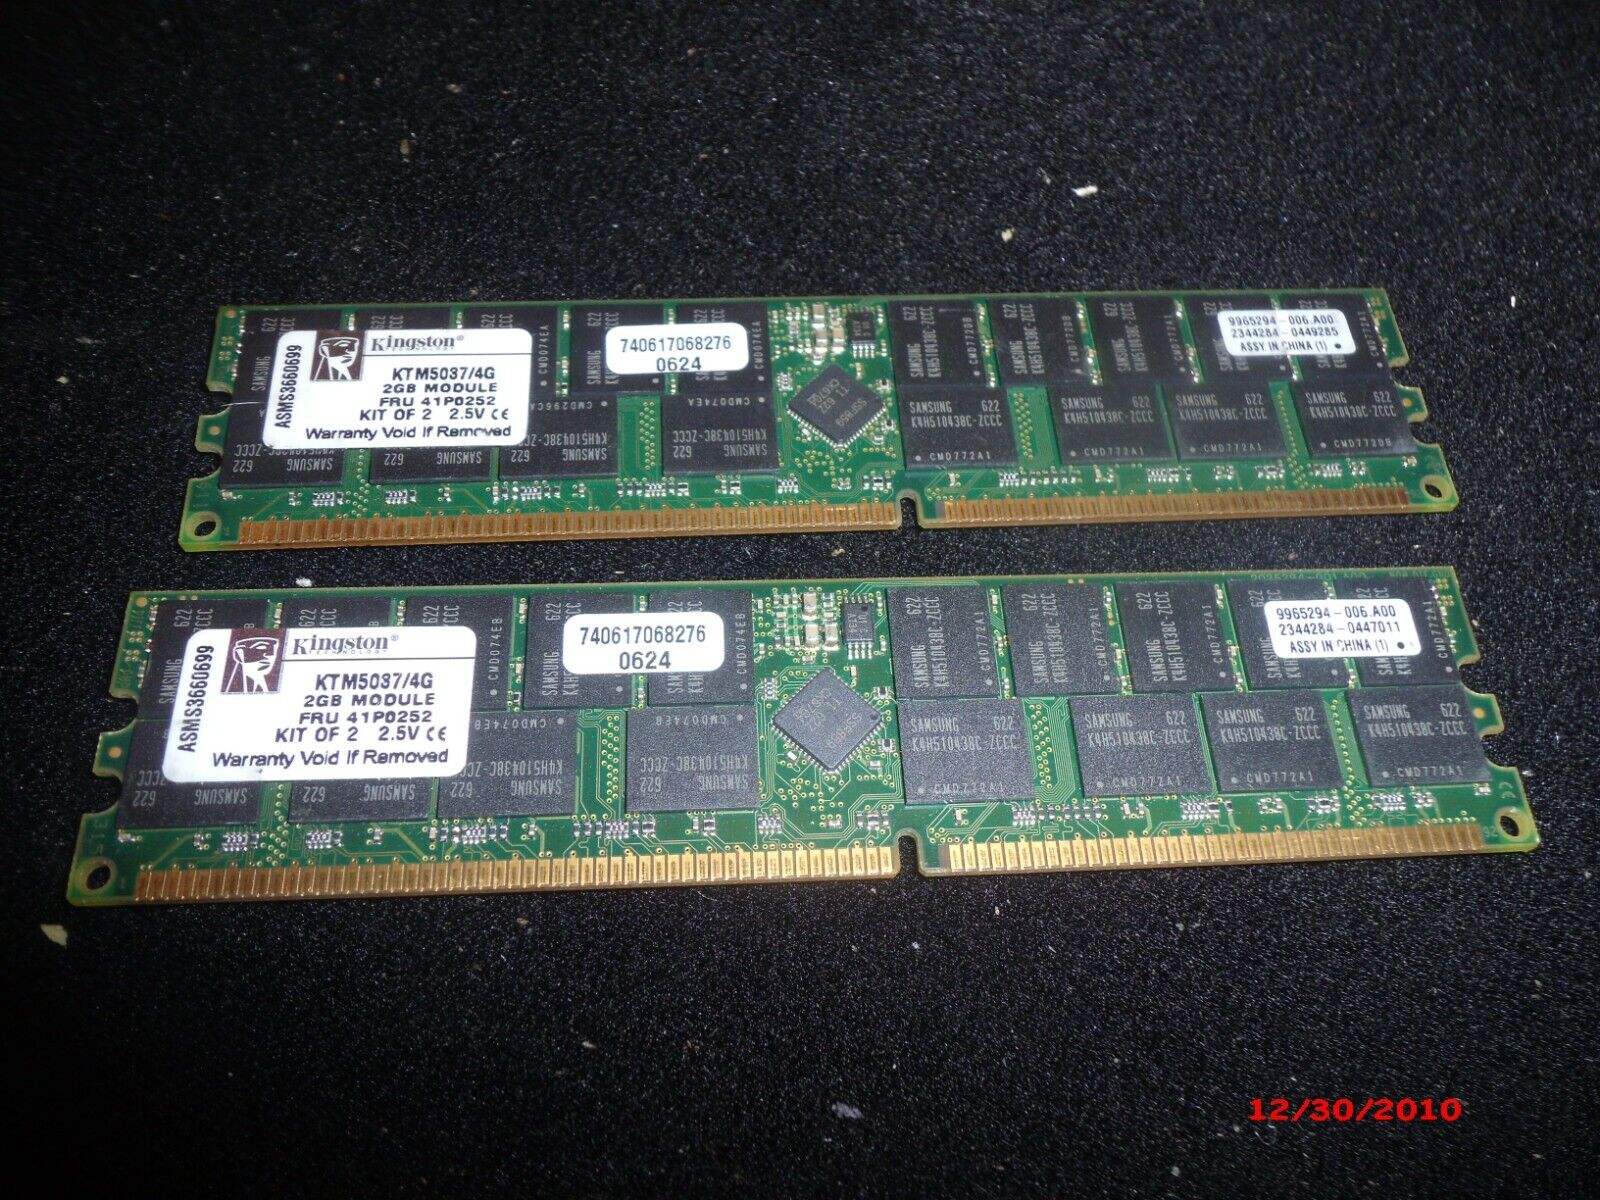 Kingston 41P0252 KTM5037/4G 2x2 DDR 266,PC2100R ECC Registered Server memory